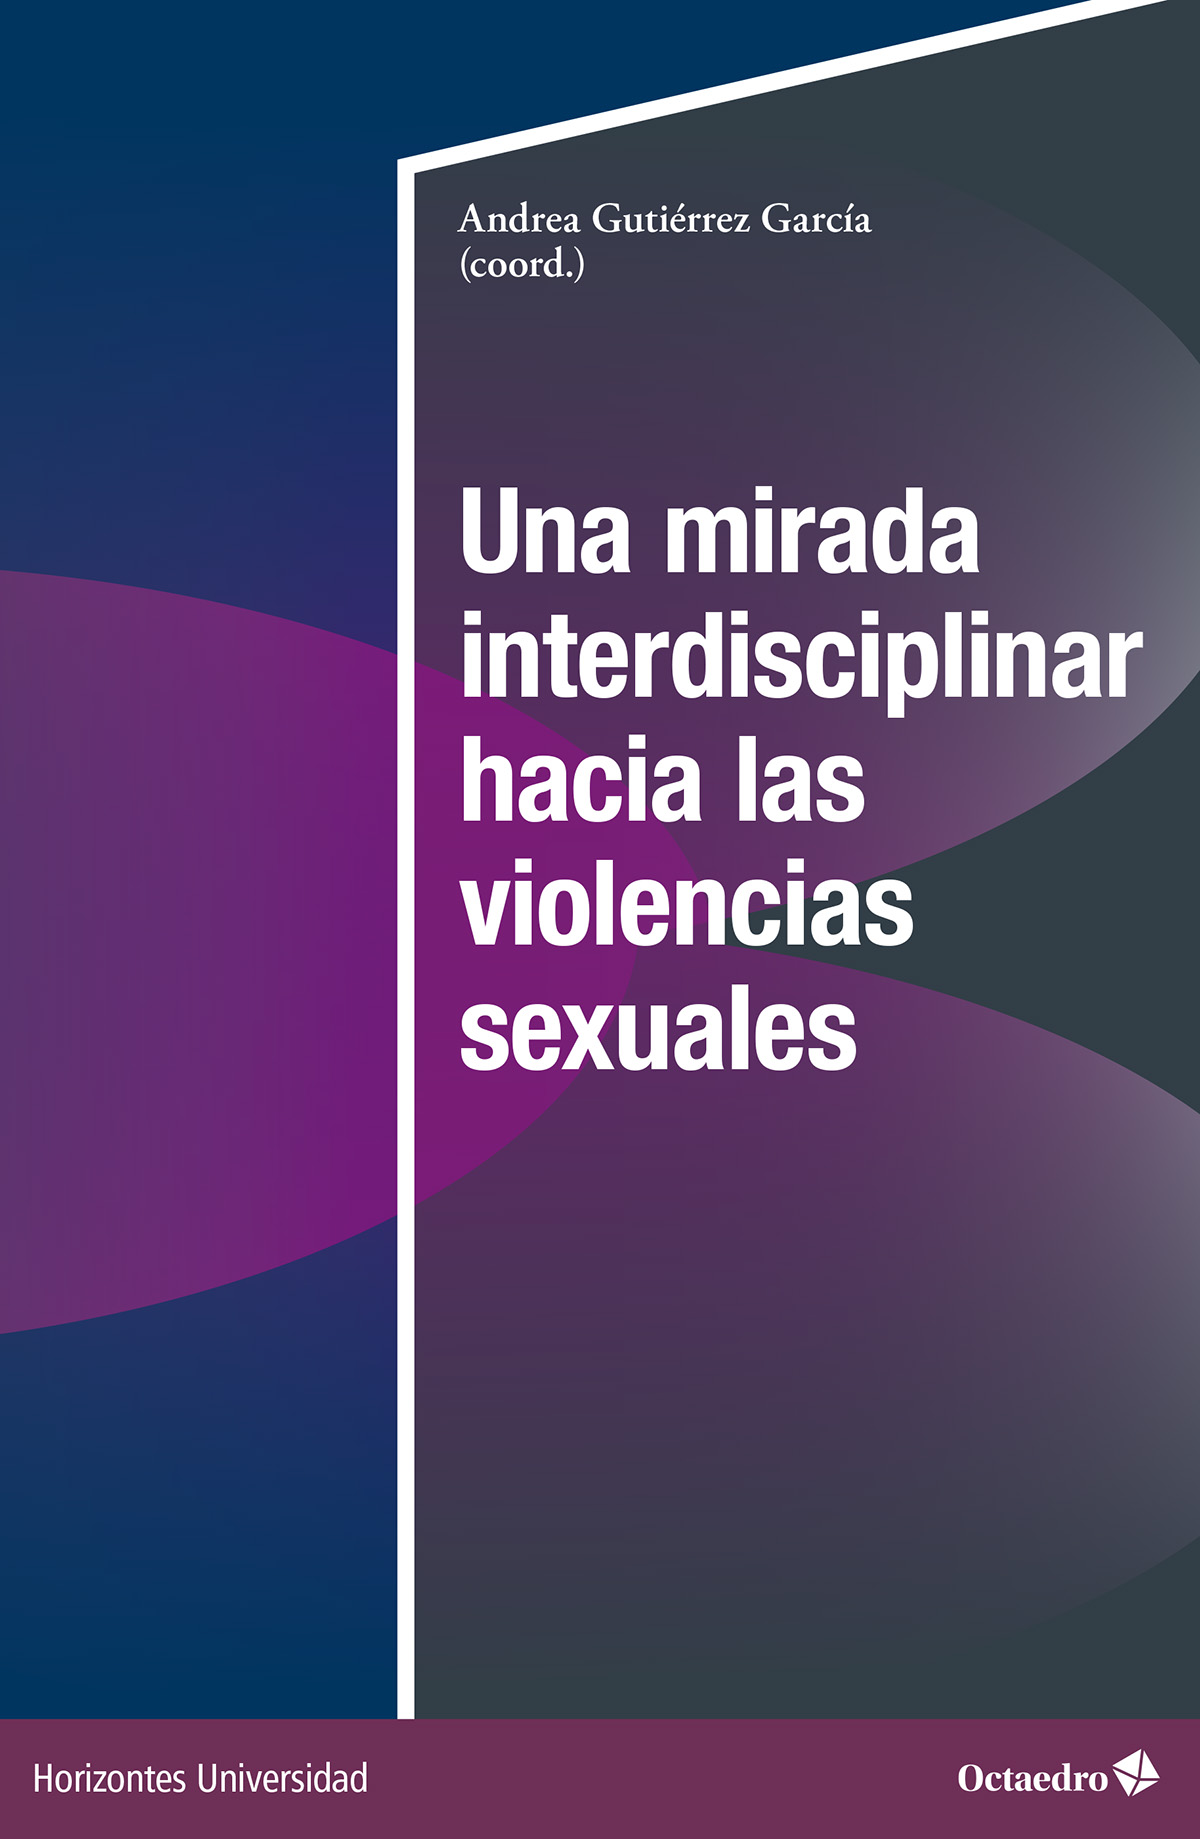 Imagen de portada del libro Una mirada interdisciplinar hacia las violencias sexuales